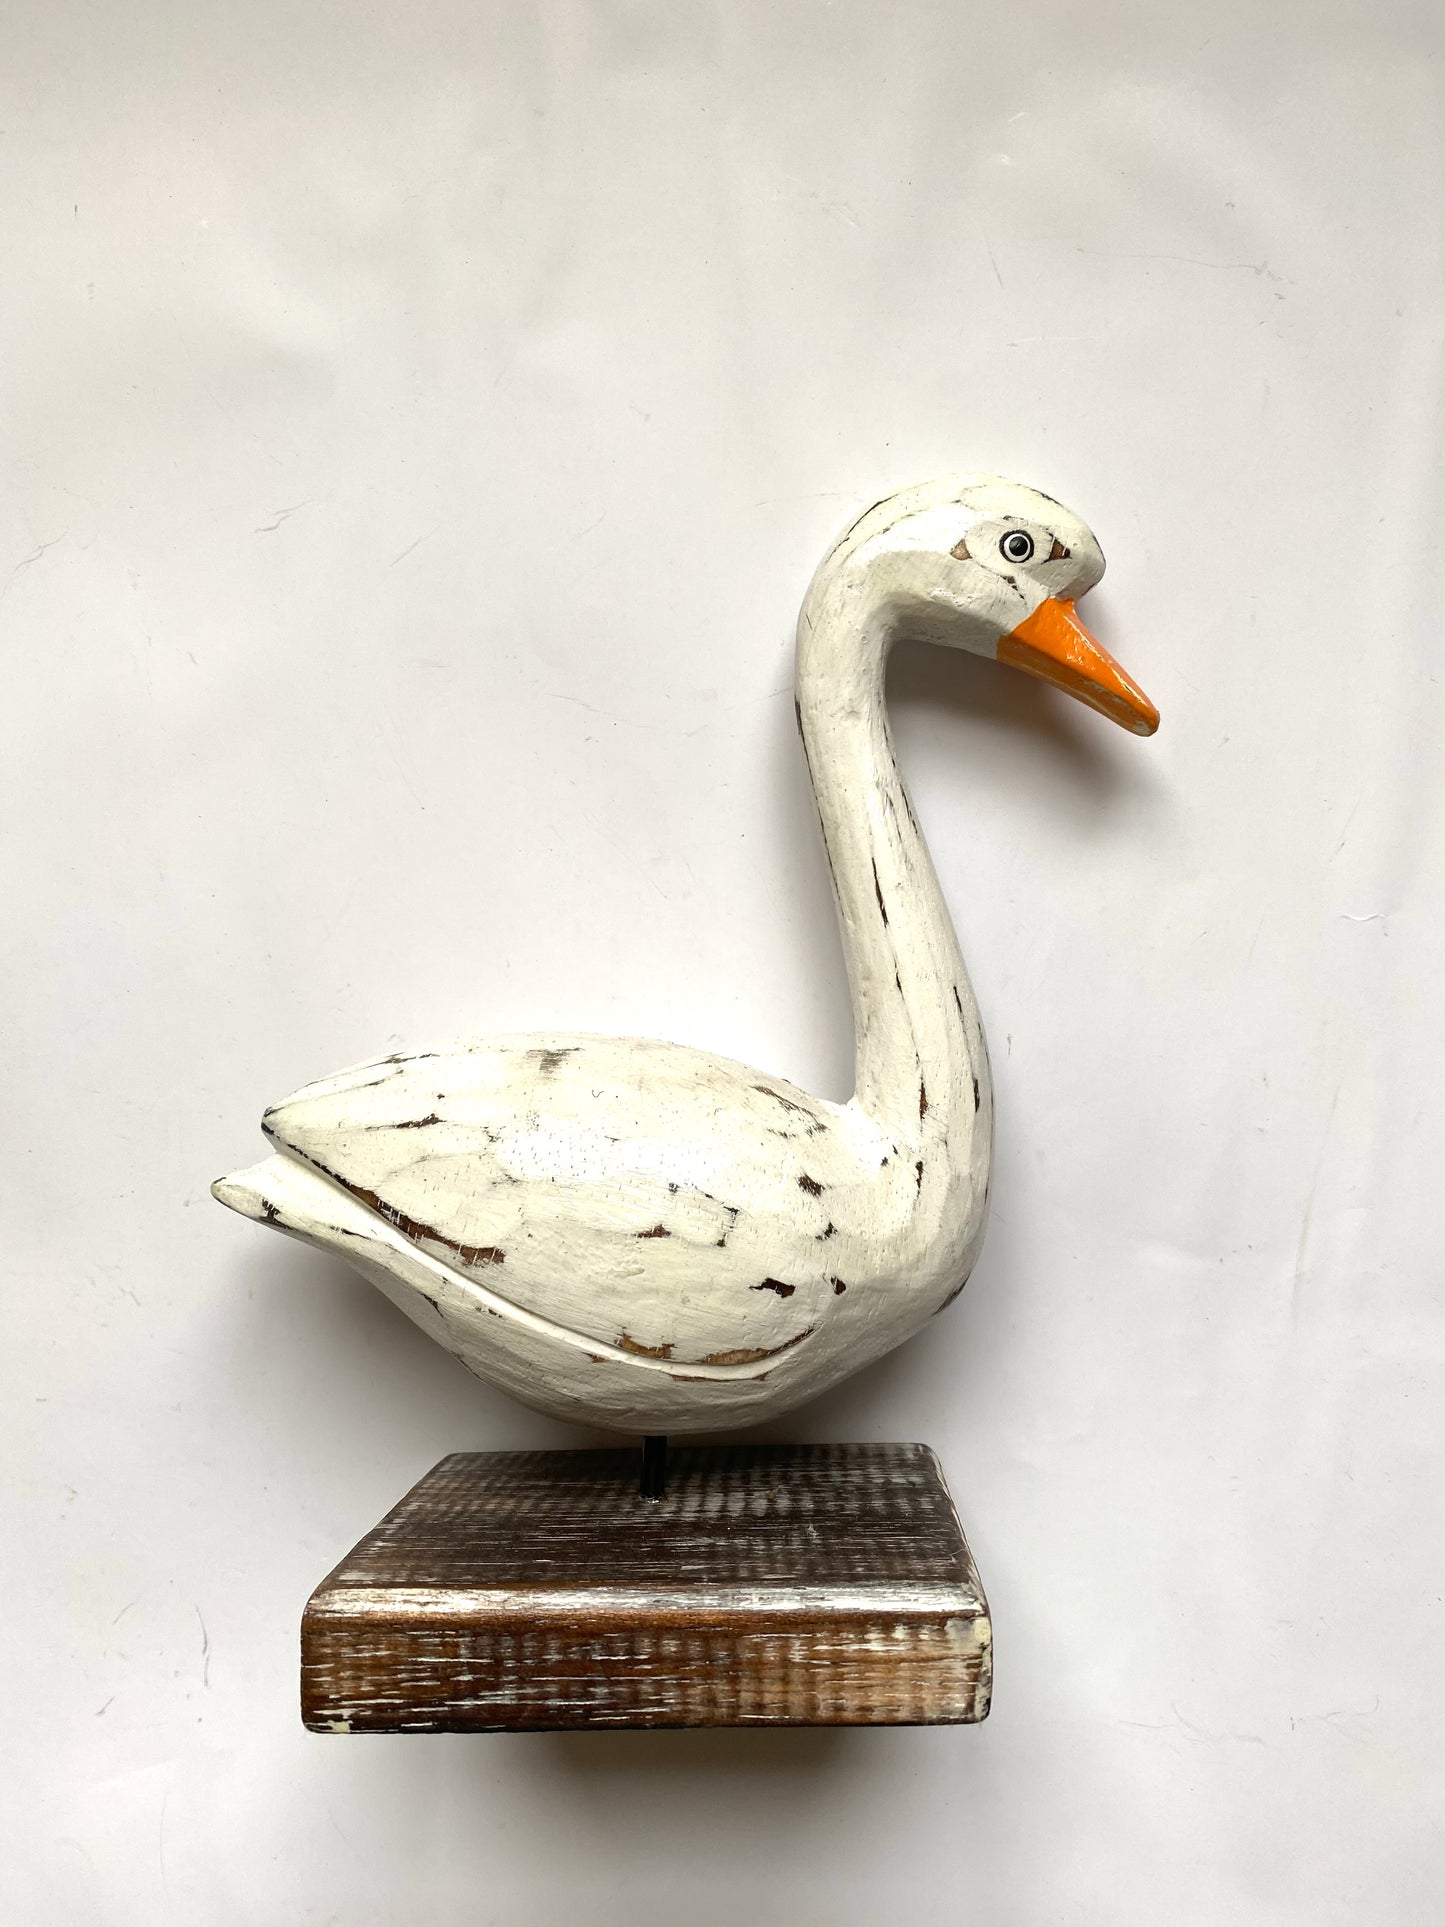 Wooden Swan